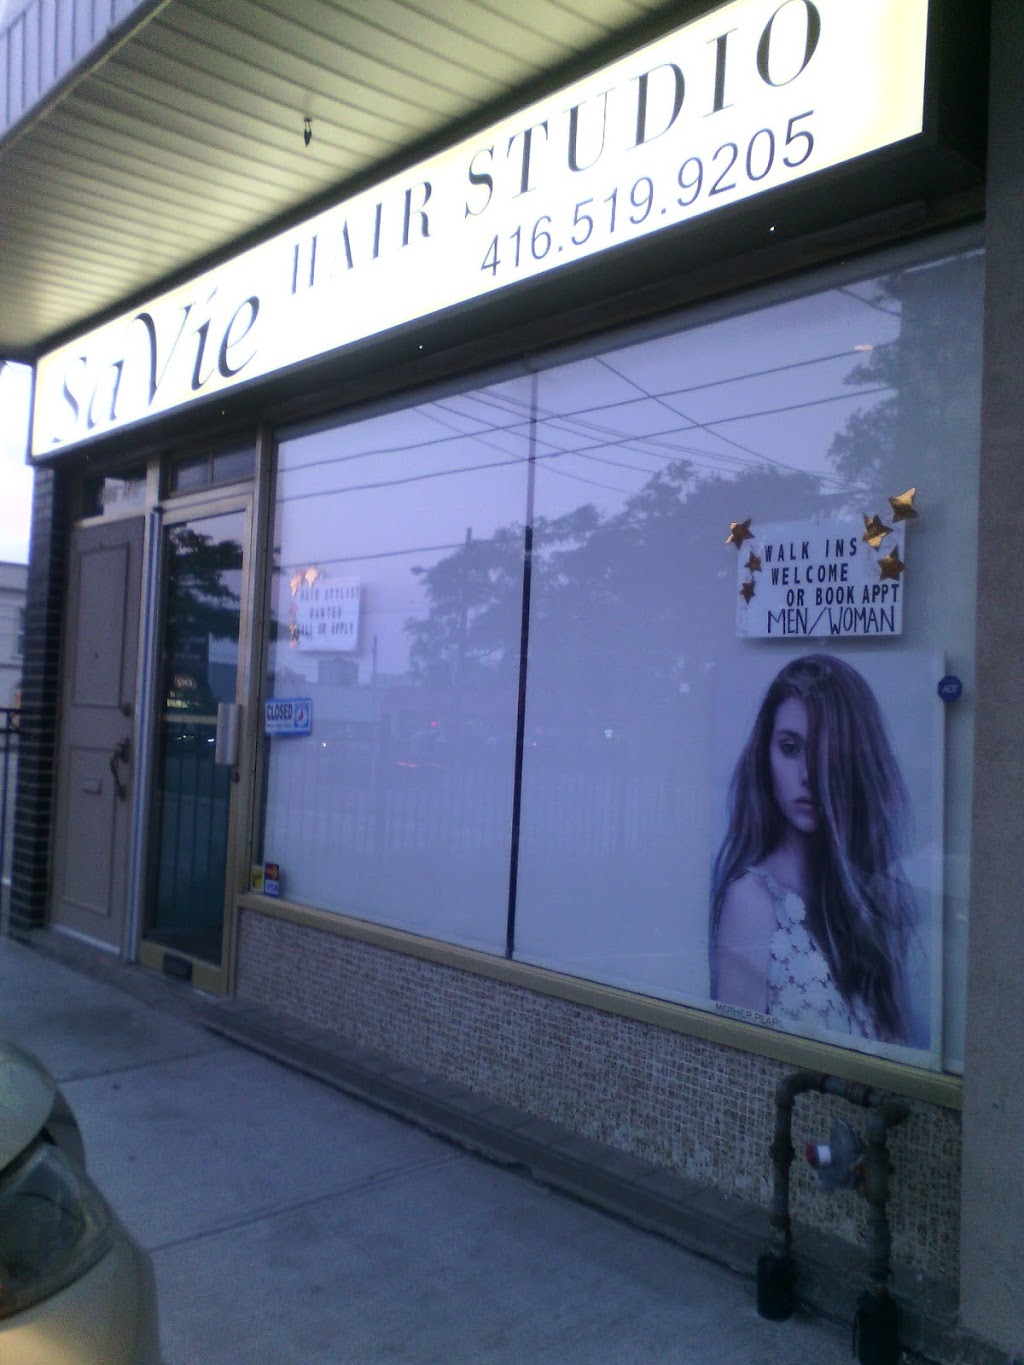 SaVie Hair Studio | 2986 Dufferin St, North York, ON M6B 3S8, Canada | Phone: (416) 519-9205